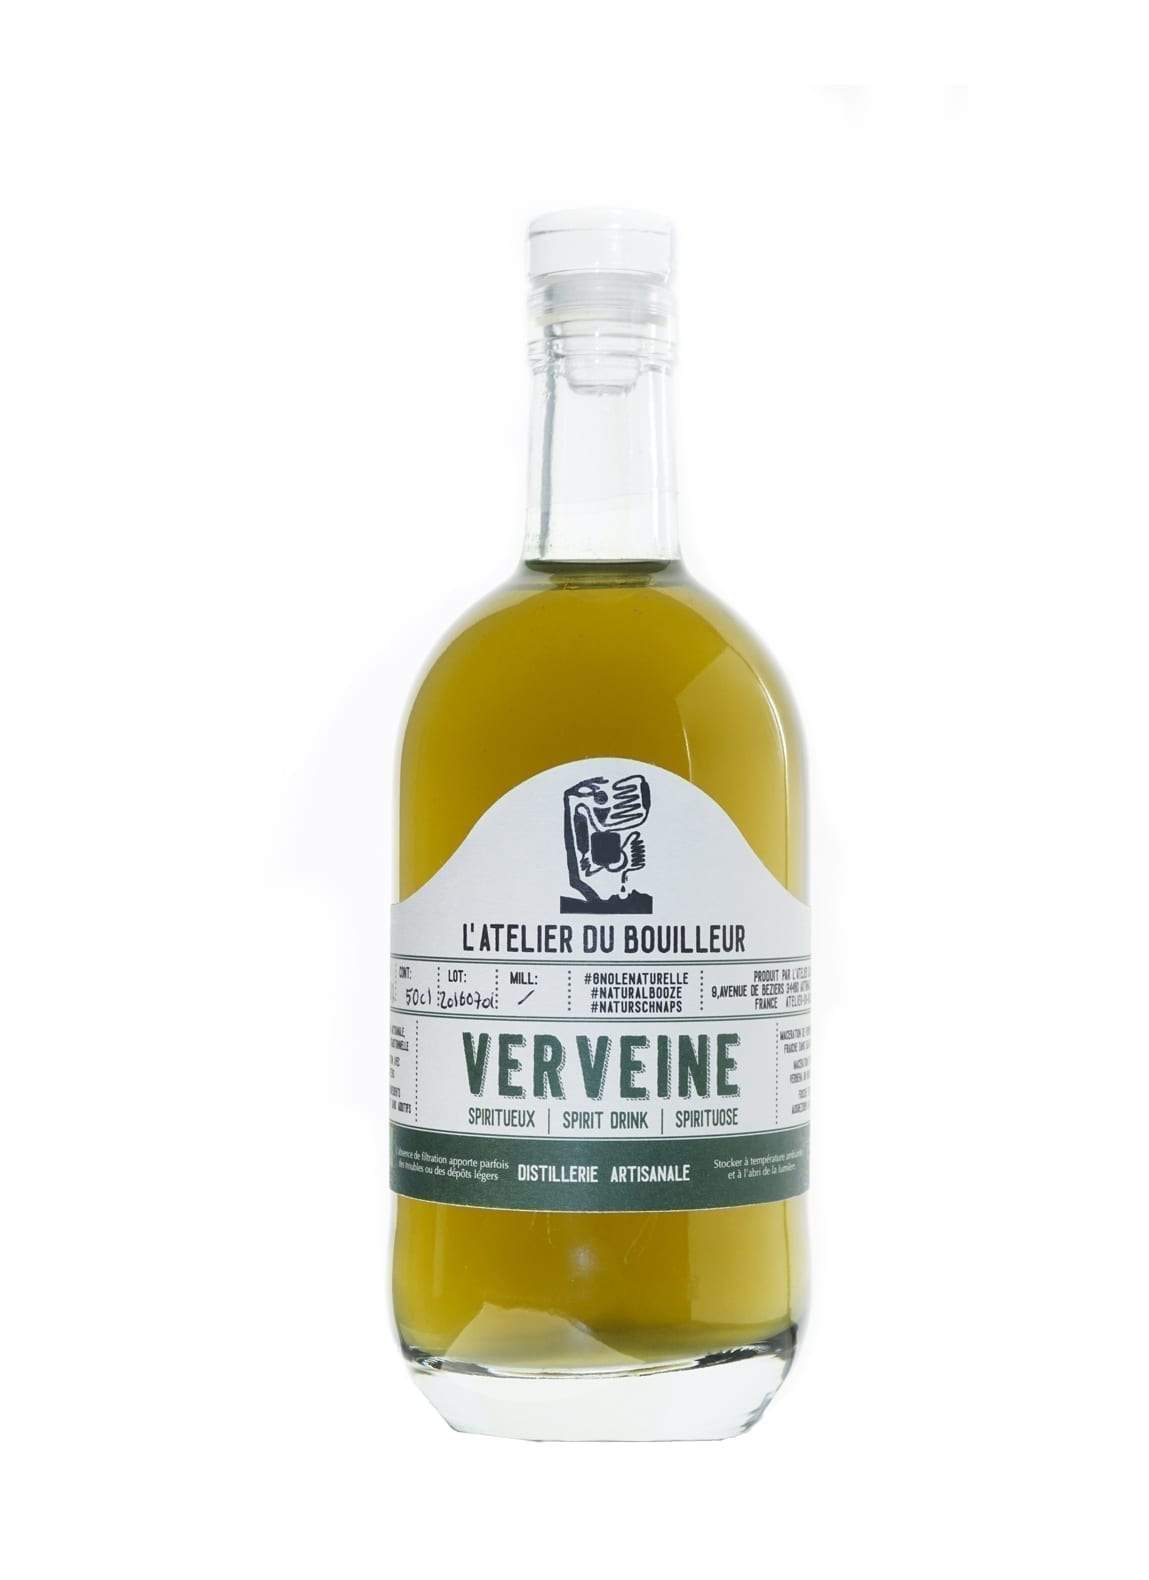 Bouilleur Eau De Vie Verveine (Verbena spirit) 40% 500ml | Liqueurs | Shop online at Spirits of France